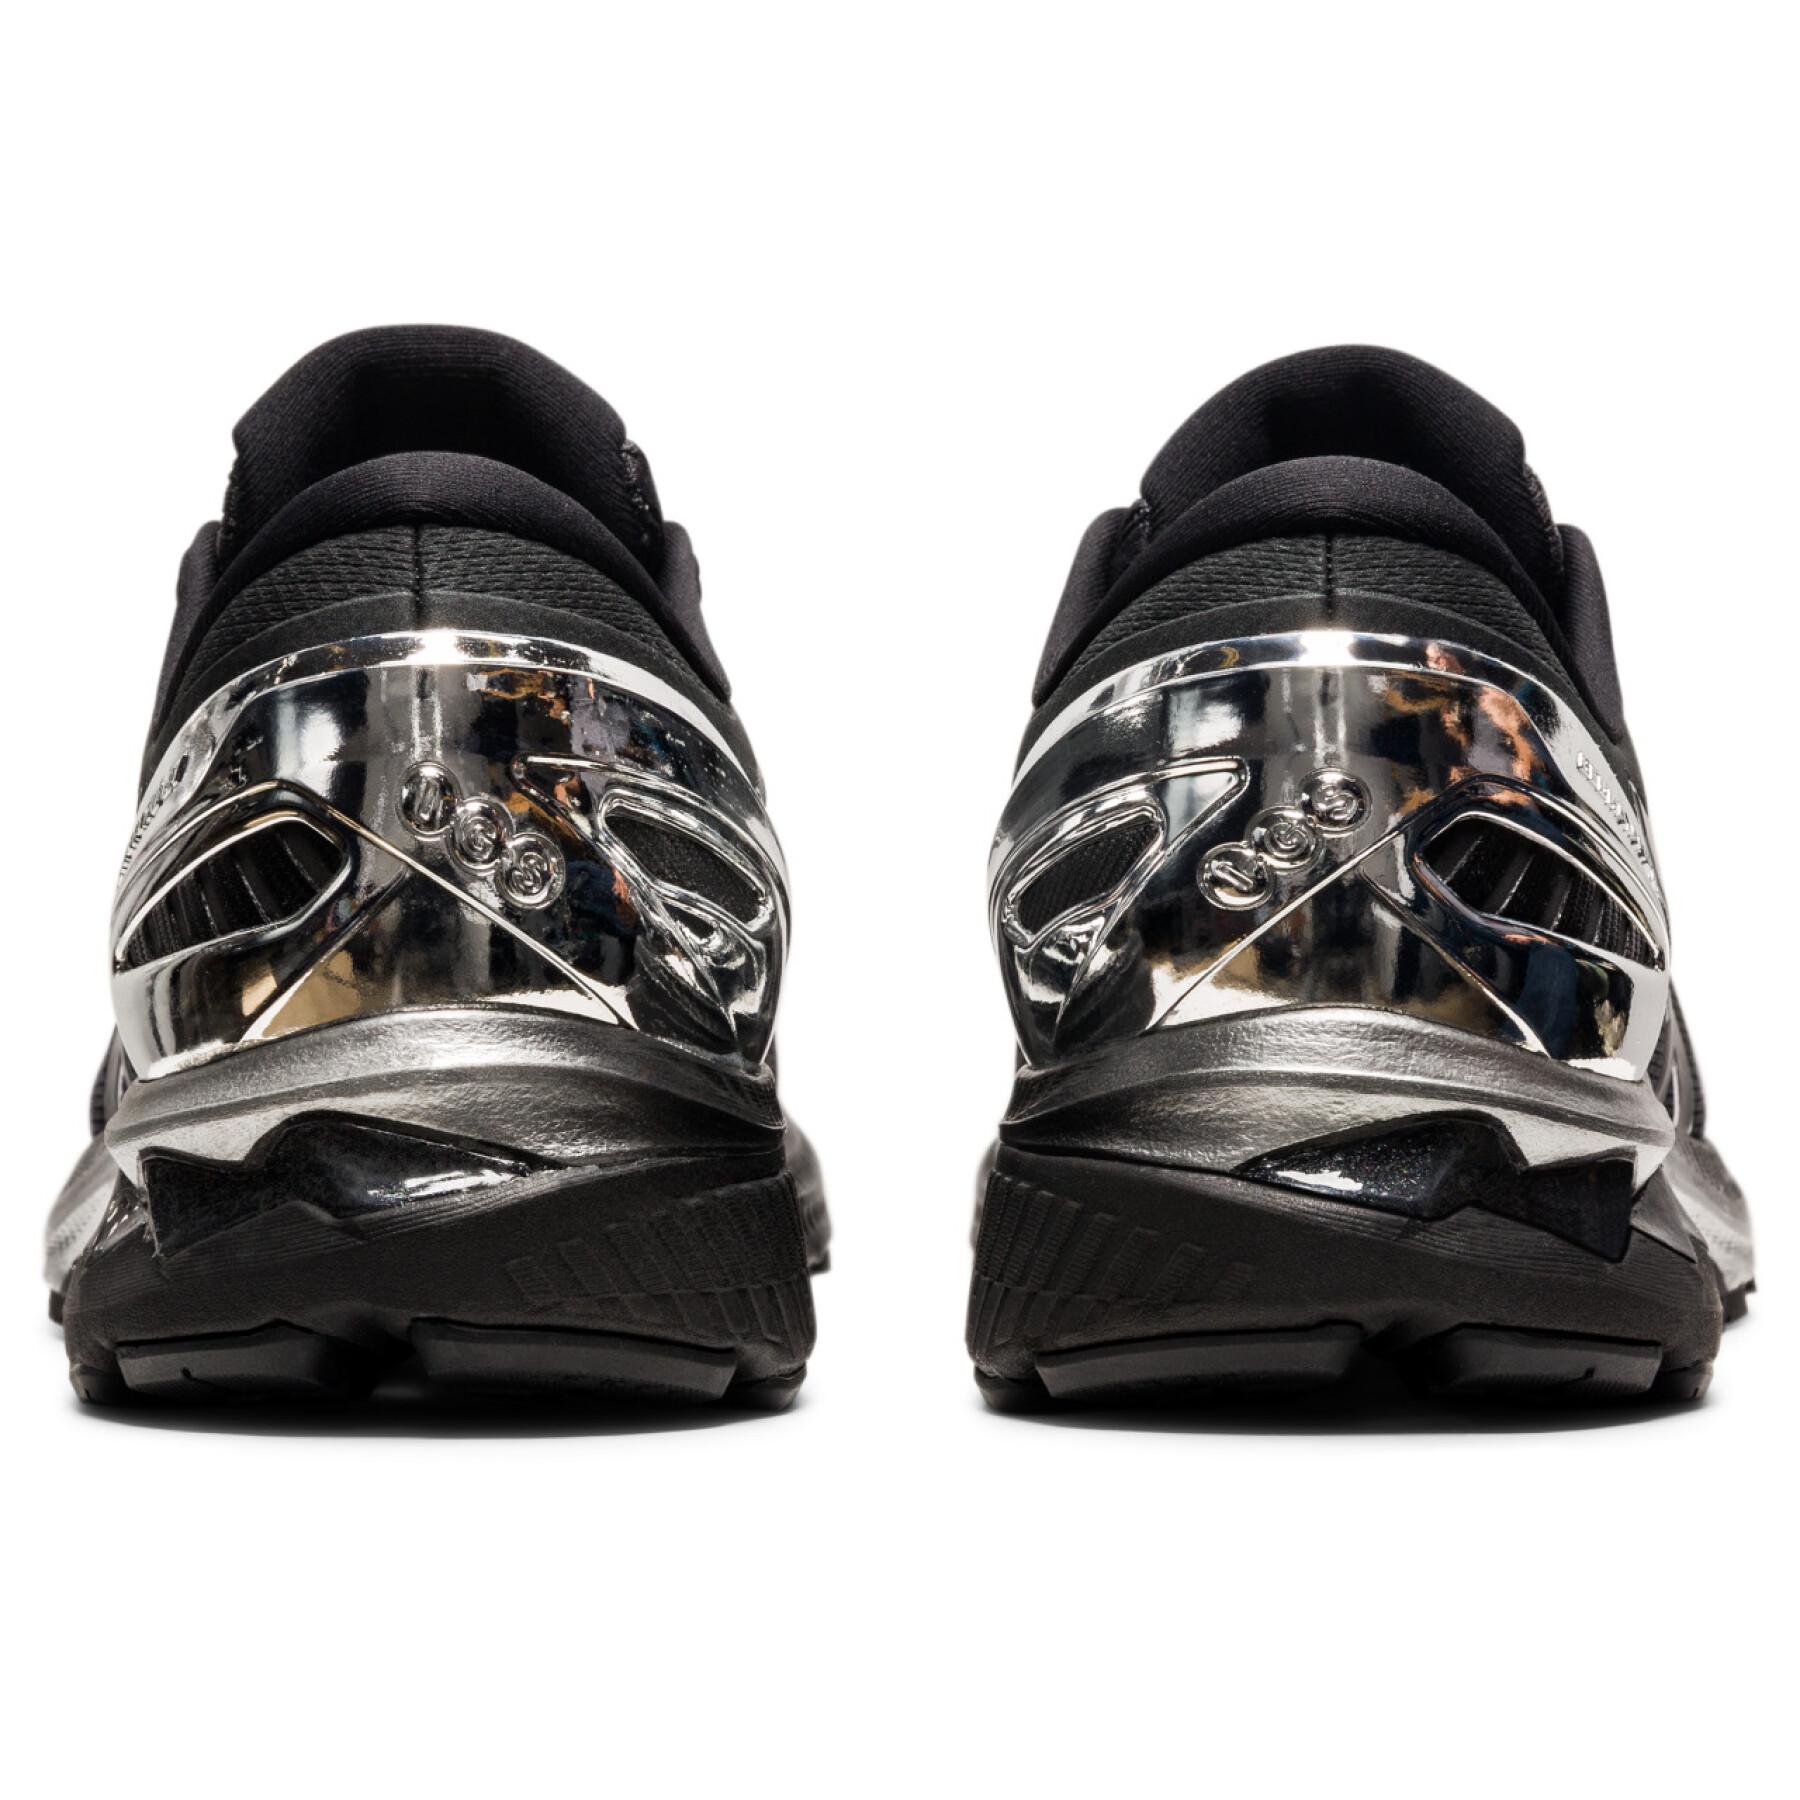 Sapatos Asics Gel-Kayano 27 Platinum